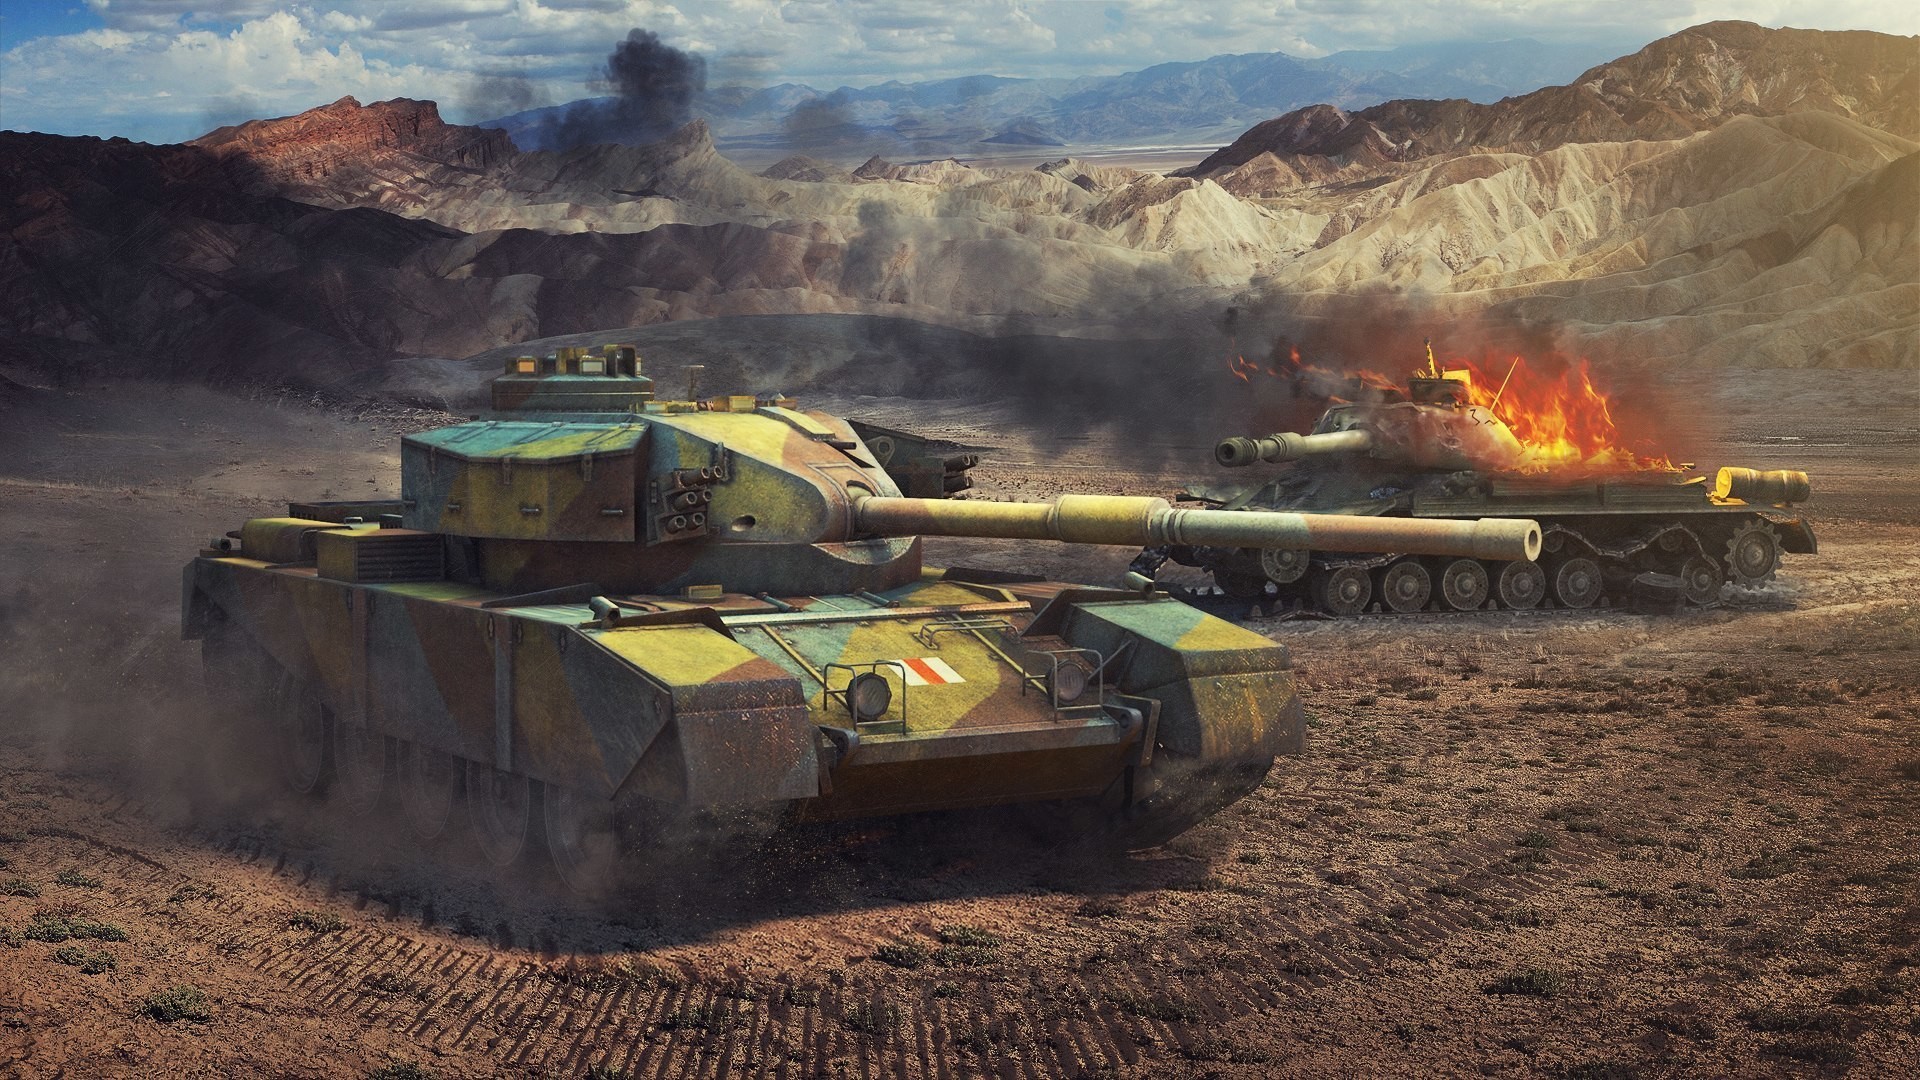 General 1920x1080 FV4202 tank World of Tanks Africa desert artwork video games military vehicle vehicle wargaming British tanks